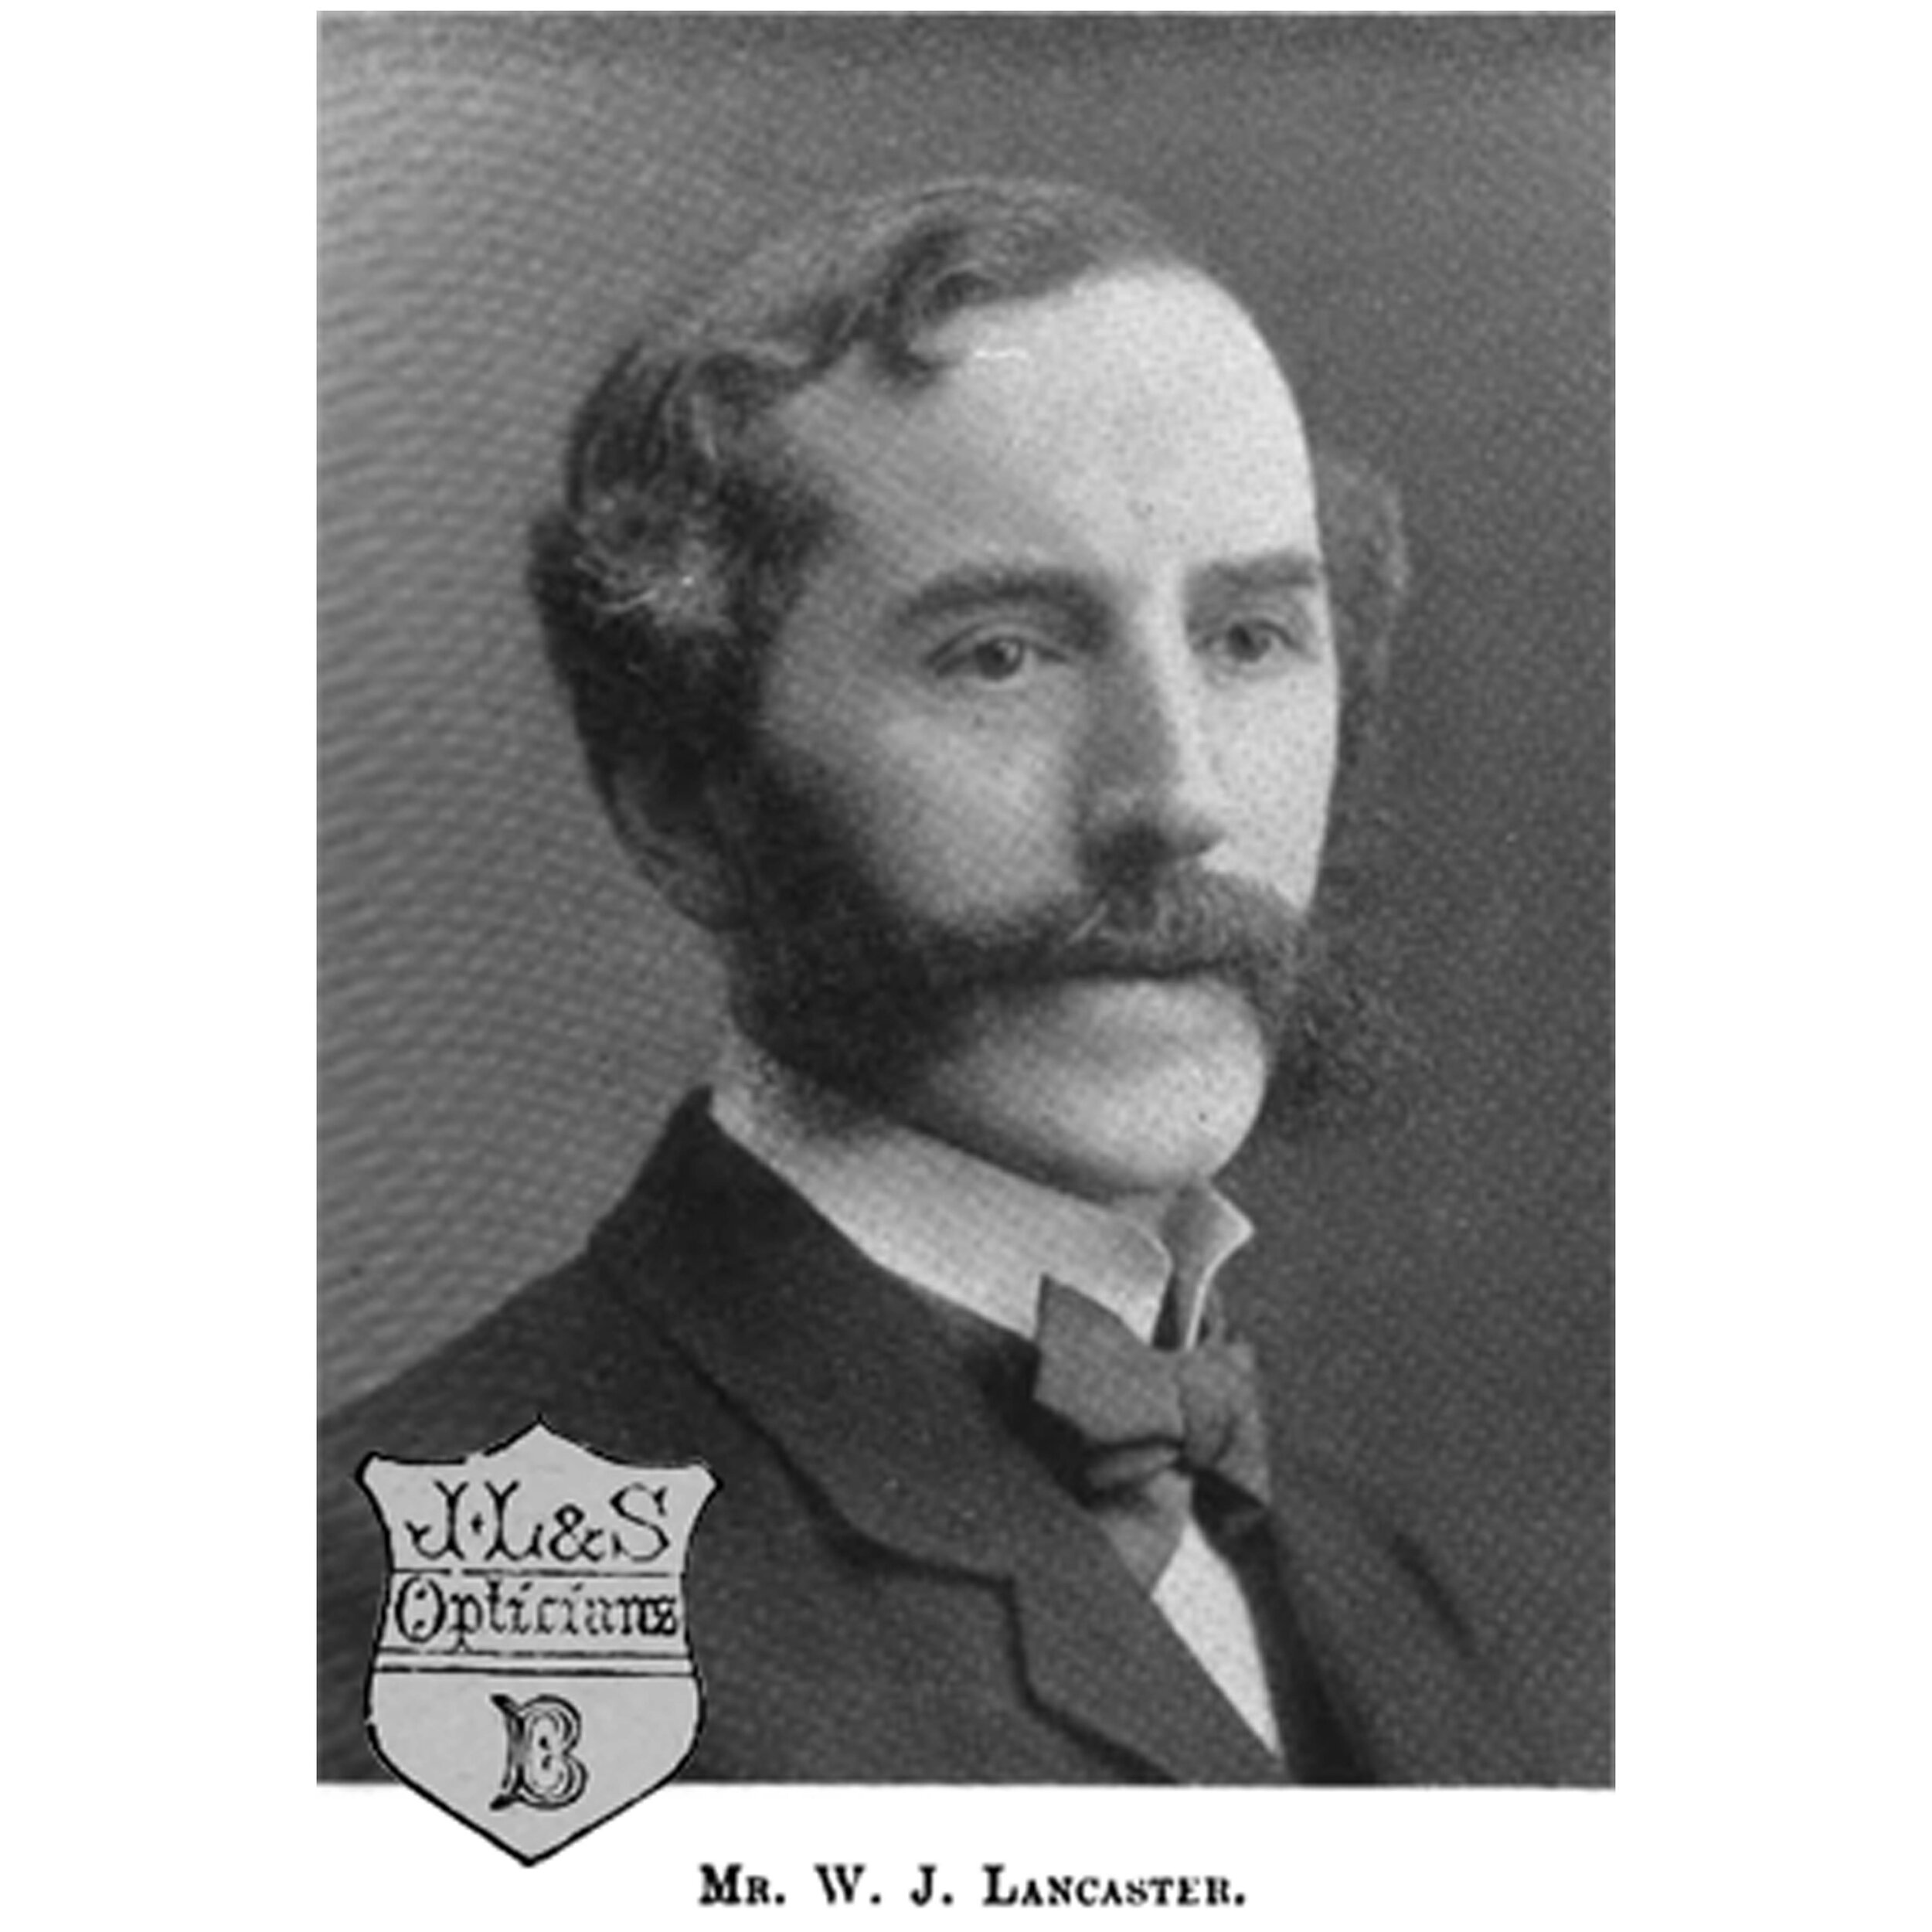 William James Lancaster